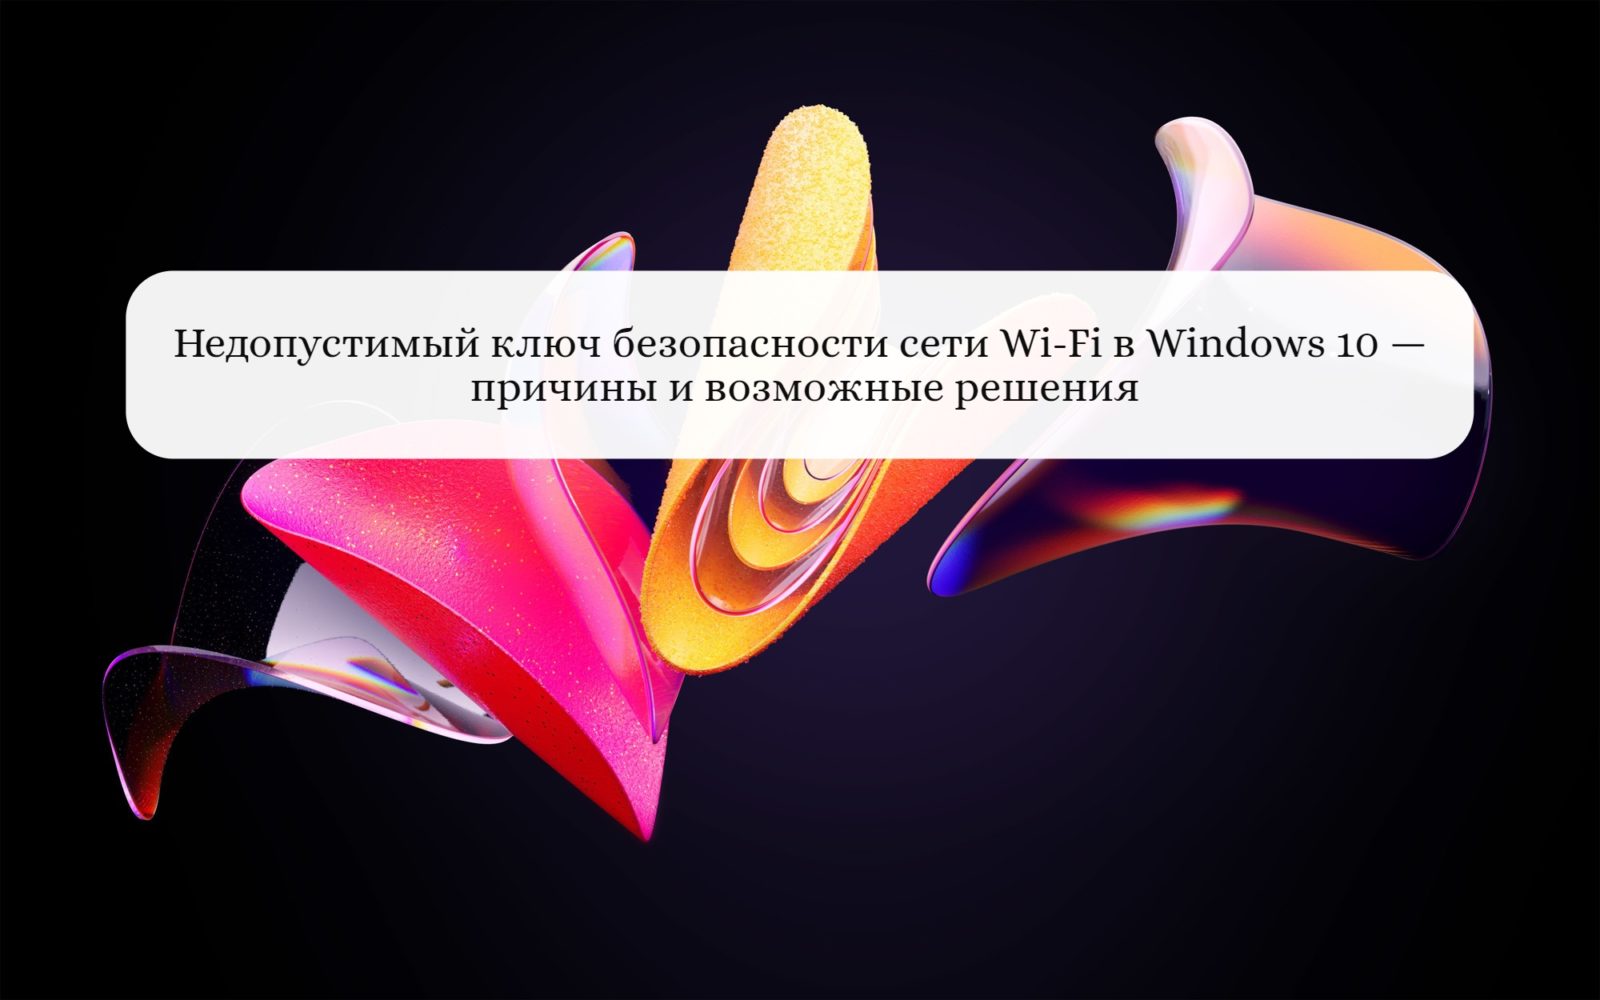 Недопустимый ключ безопасности сети Wi-Fi в Windows 10 — причины и возможные решения